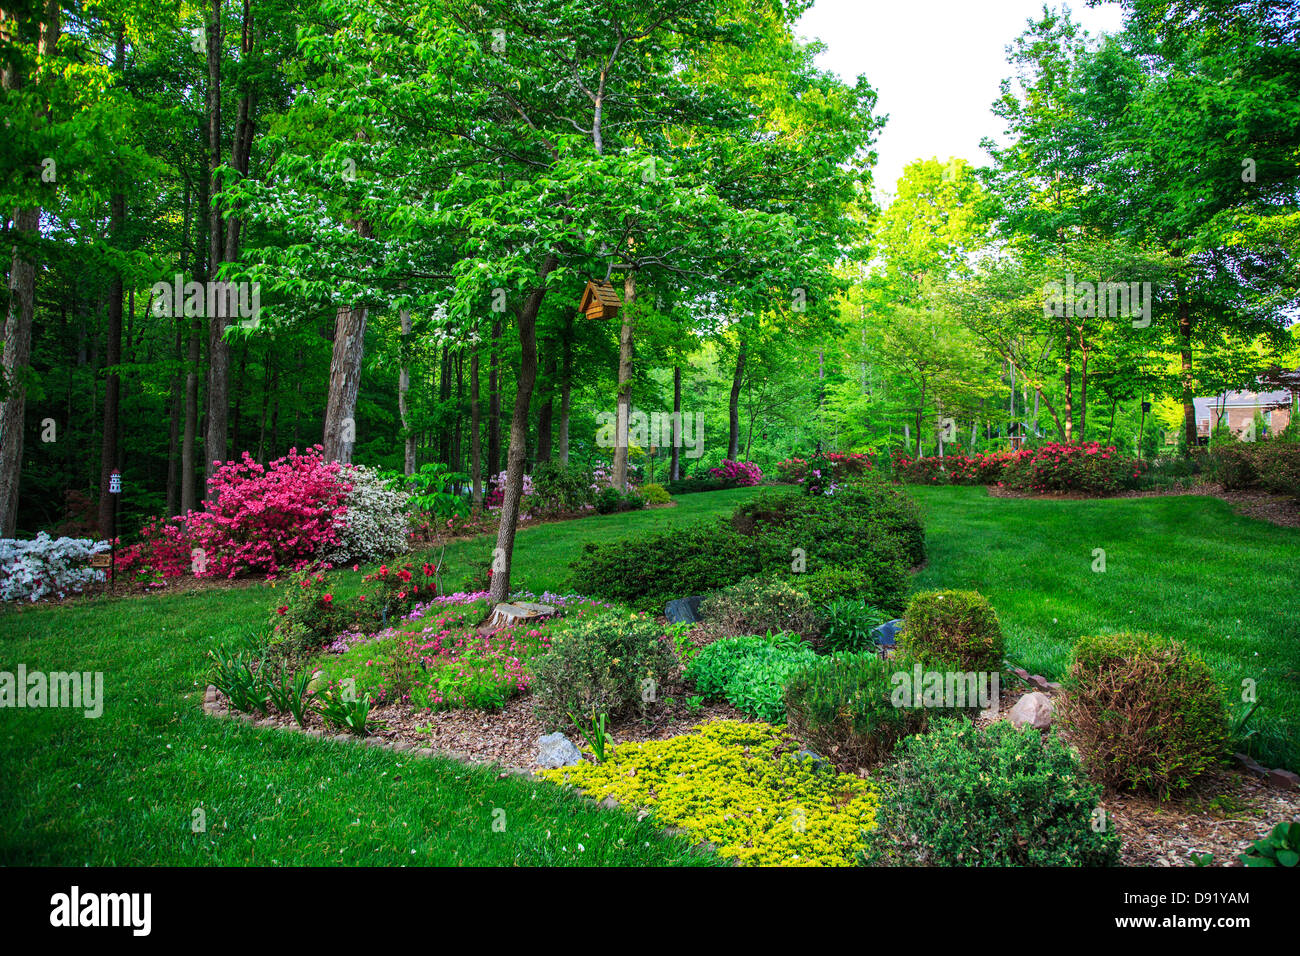 Un beau jardin bien entretenu, en Caroline du Nord. Birhouses, arbres, fleurs et arbustes. Banque D'Images